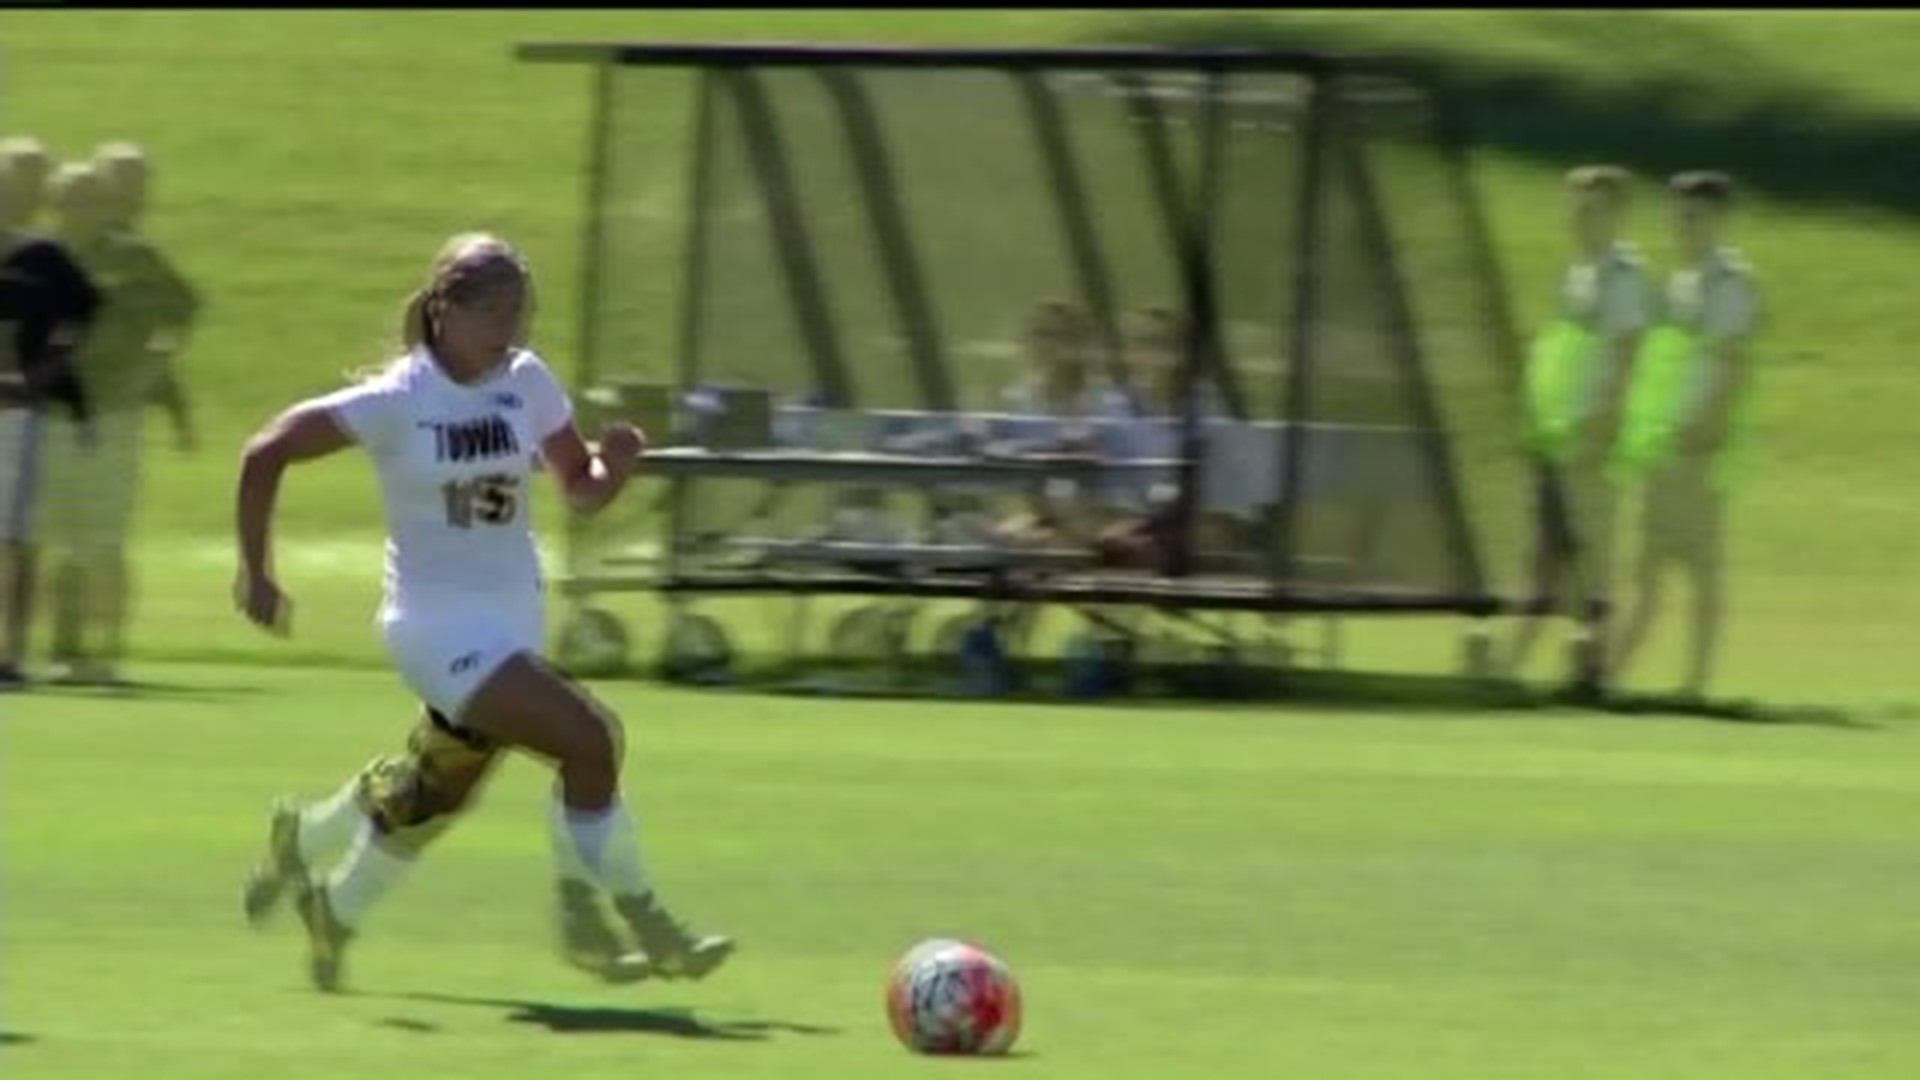 Ripslinger makes her Iowa Soccer Debut